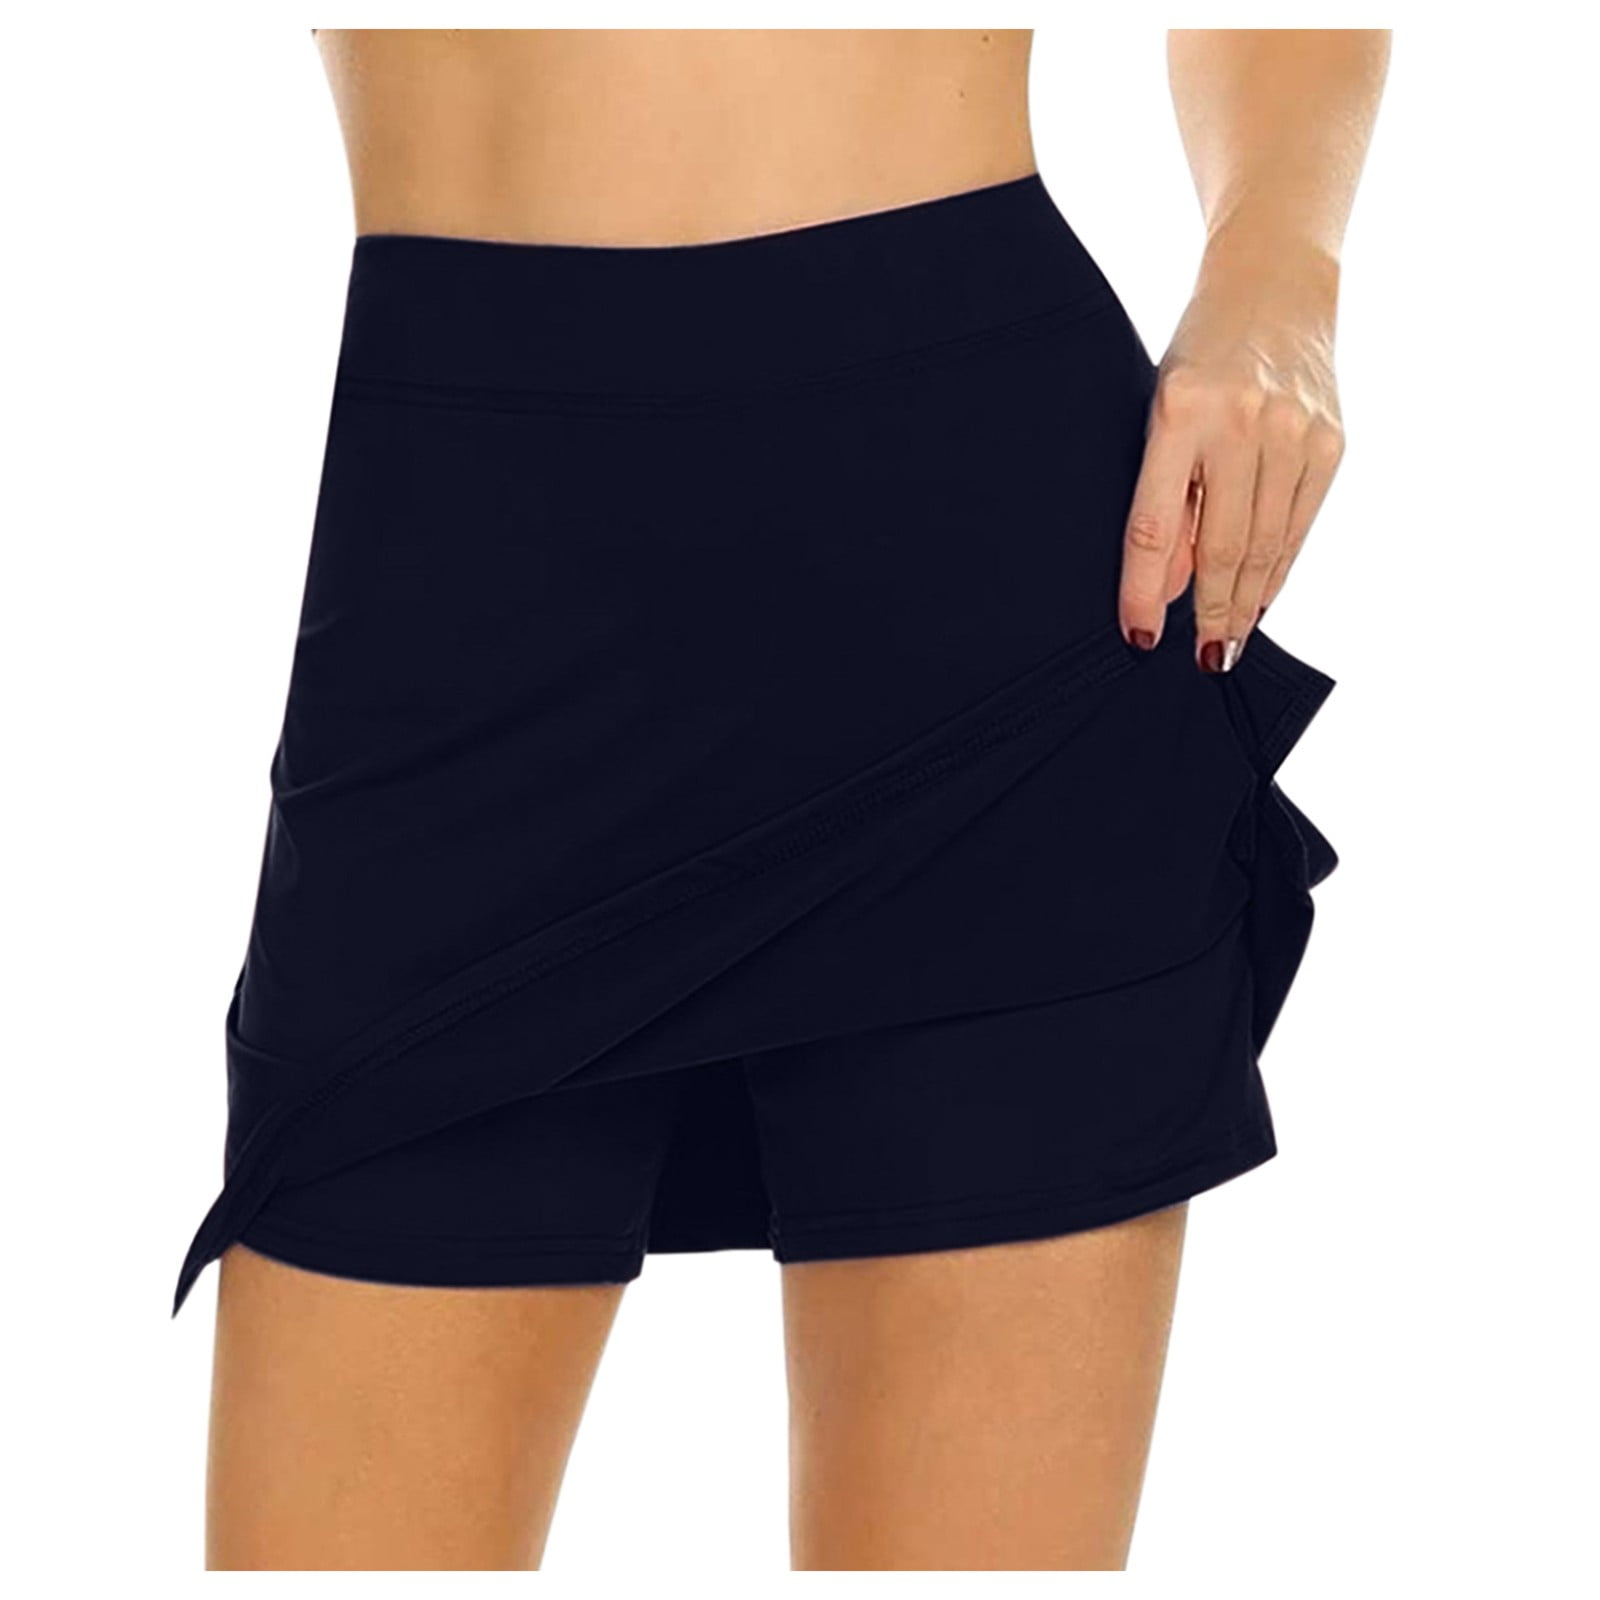 Skorts Skirts For Women Dressy Cotton Active Performance Skort Lightweight  Running Tennis Sport Tennis Skirts For Women